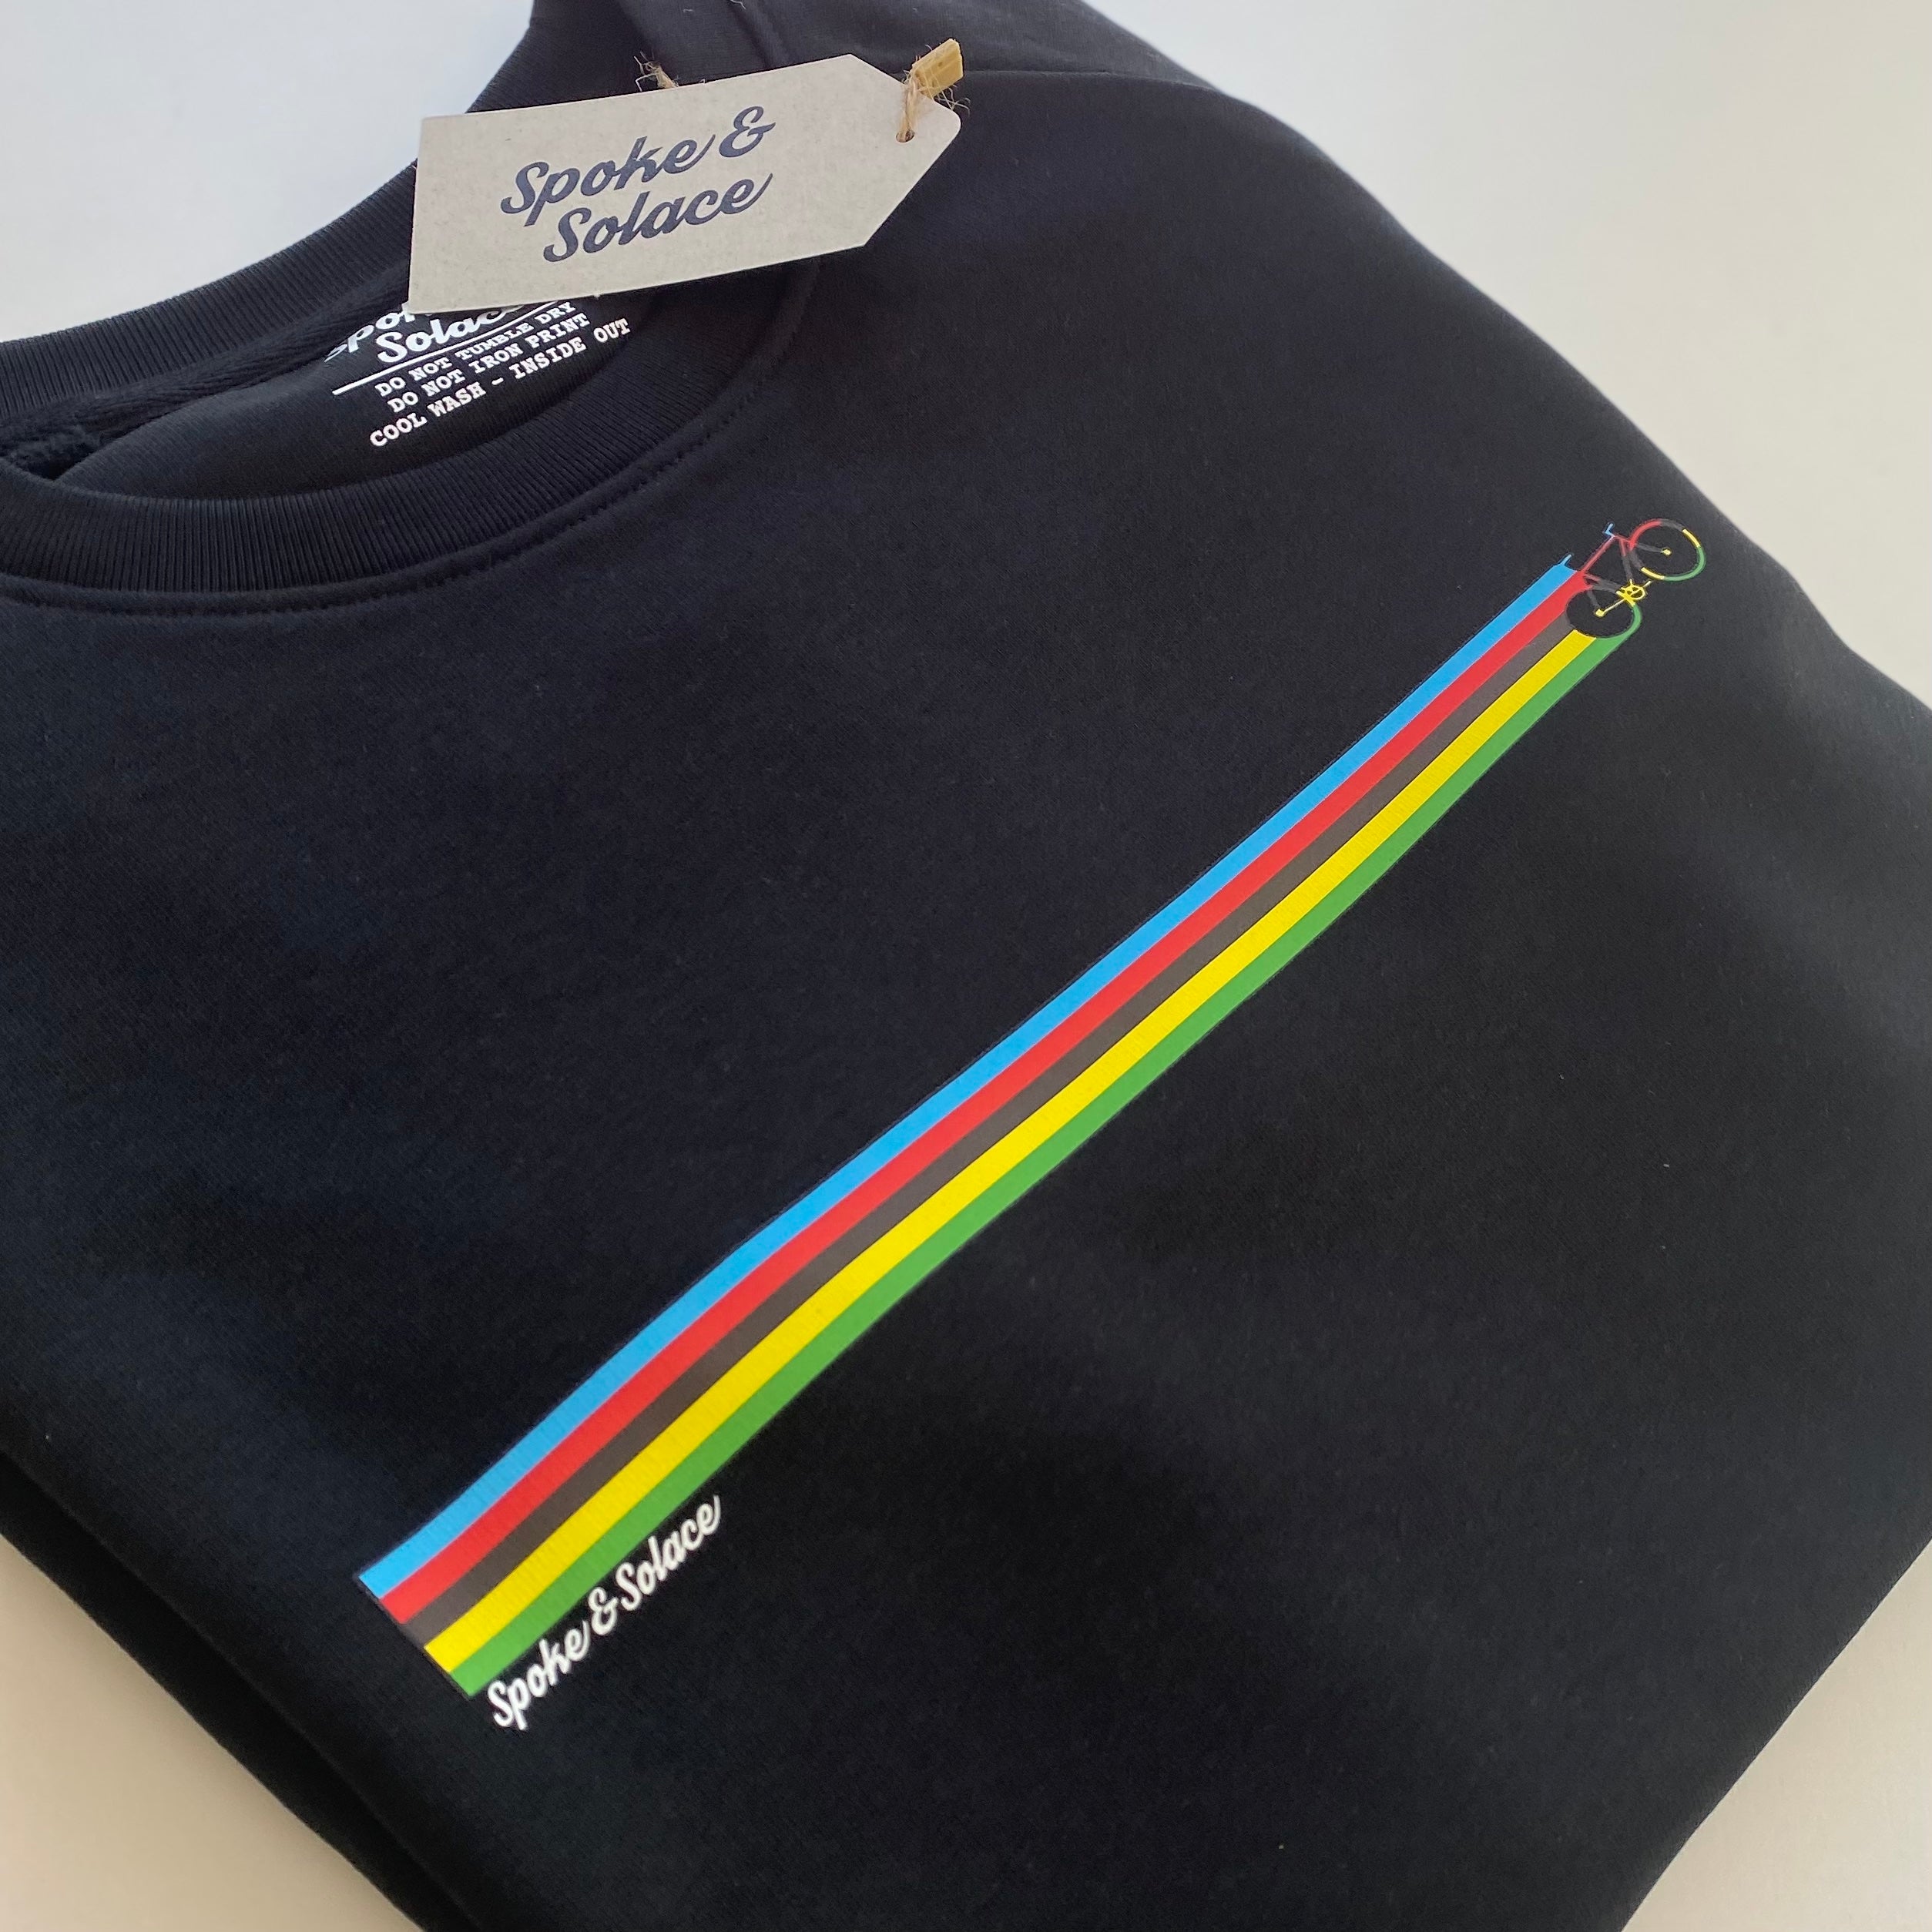 UCI Stripe Sweatshirt - Spoke & Solace